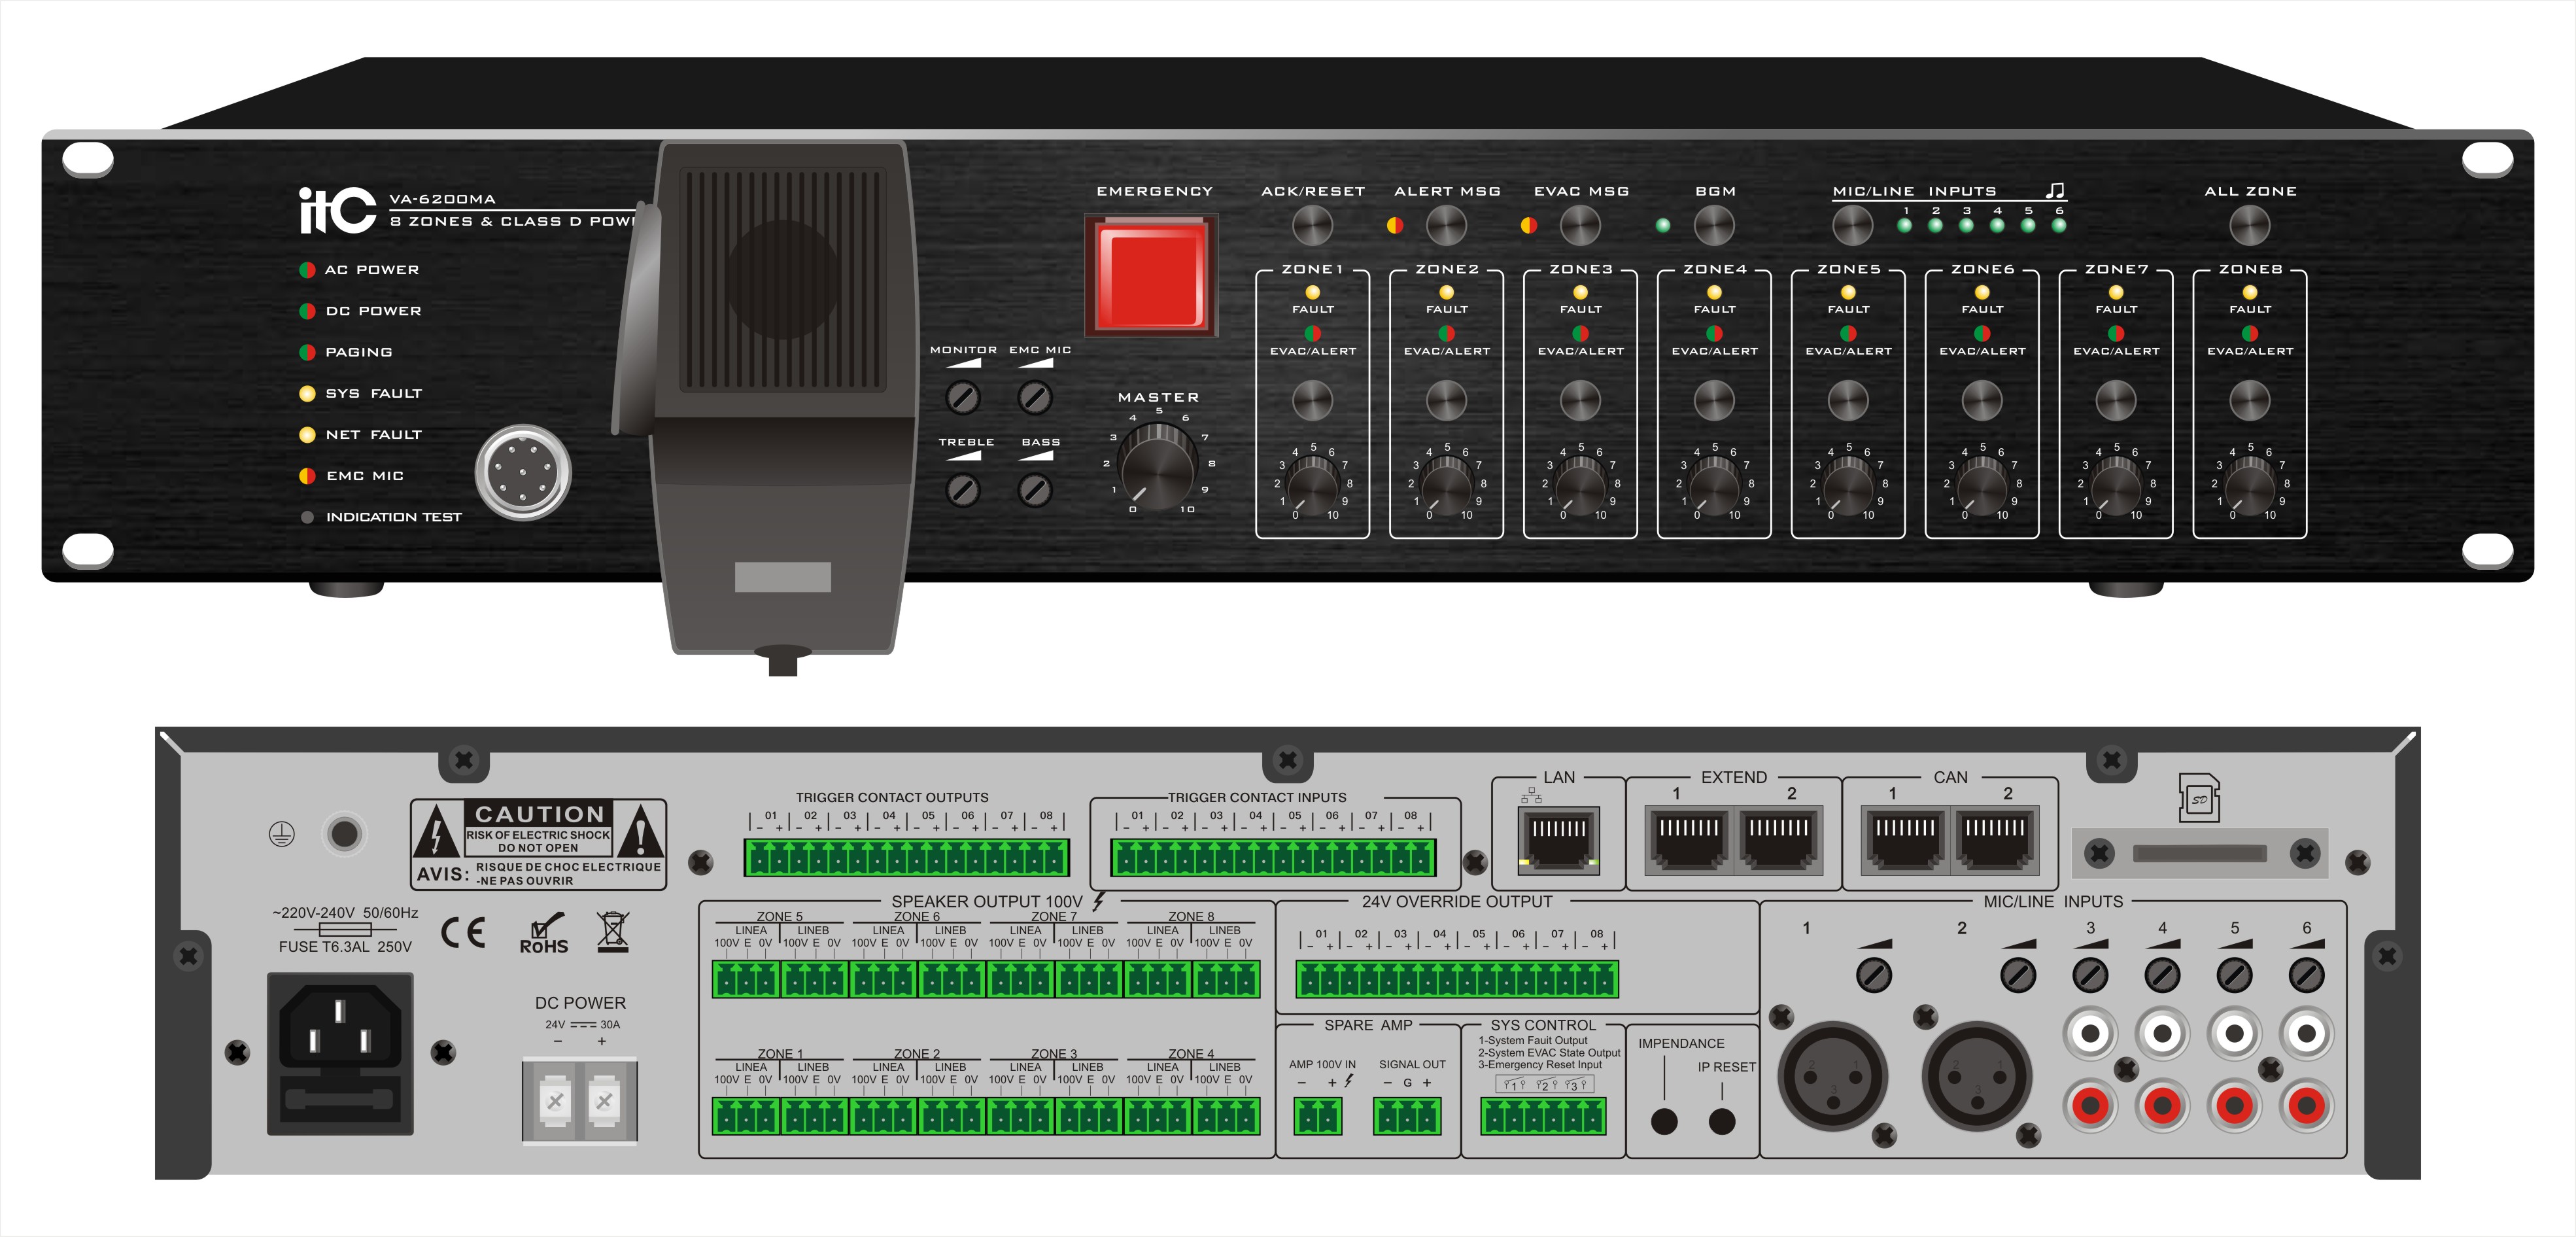 Lpa duo mic. LPA-240ma-m. Микрофон LPA-mic1. LPA-lx240, трансляционный микшер-усилитель. ITC аудио усилитель.